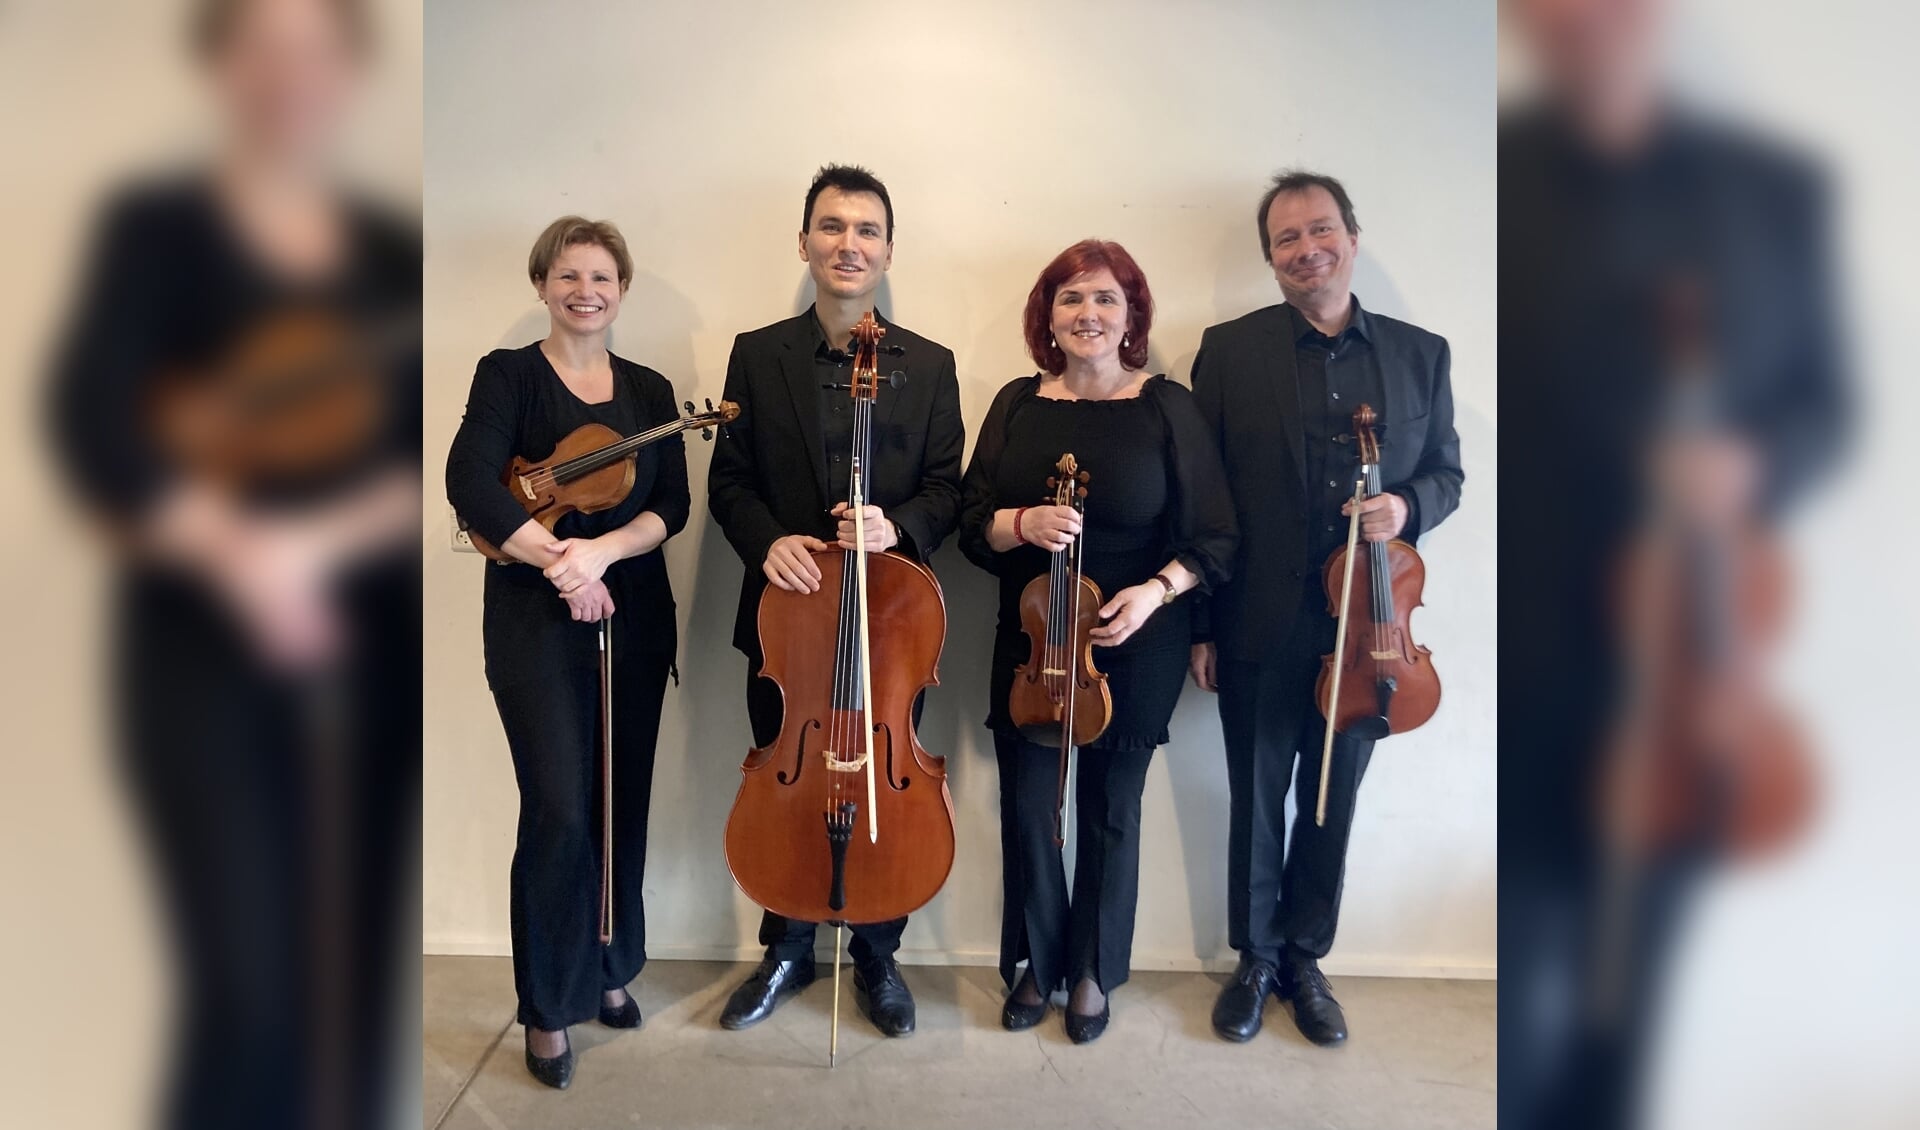 Fra venstre er det Birgit Bauer på violin, Martin Bratissoli  på bratsch, Mihaela Oprea på violin og Jakob Elmedahl Johansen på bratsch.